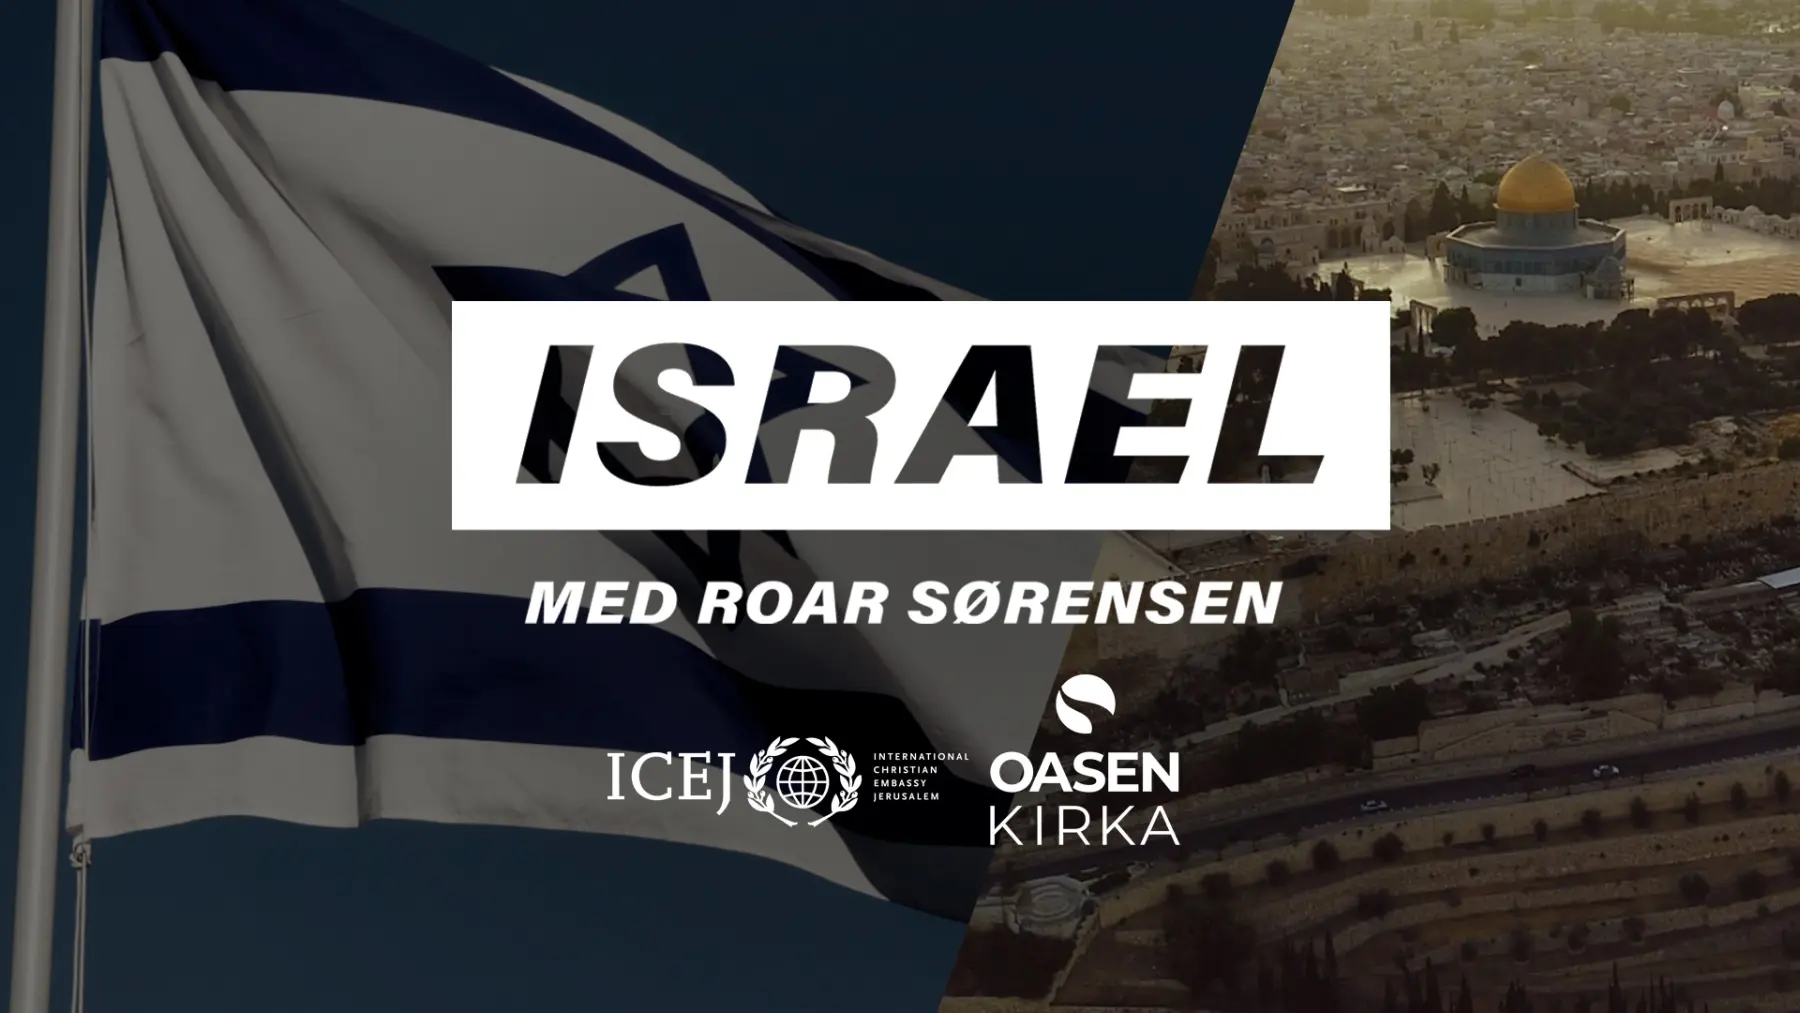 Israelsseminar med Roar Sørensen - thumbnail